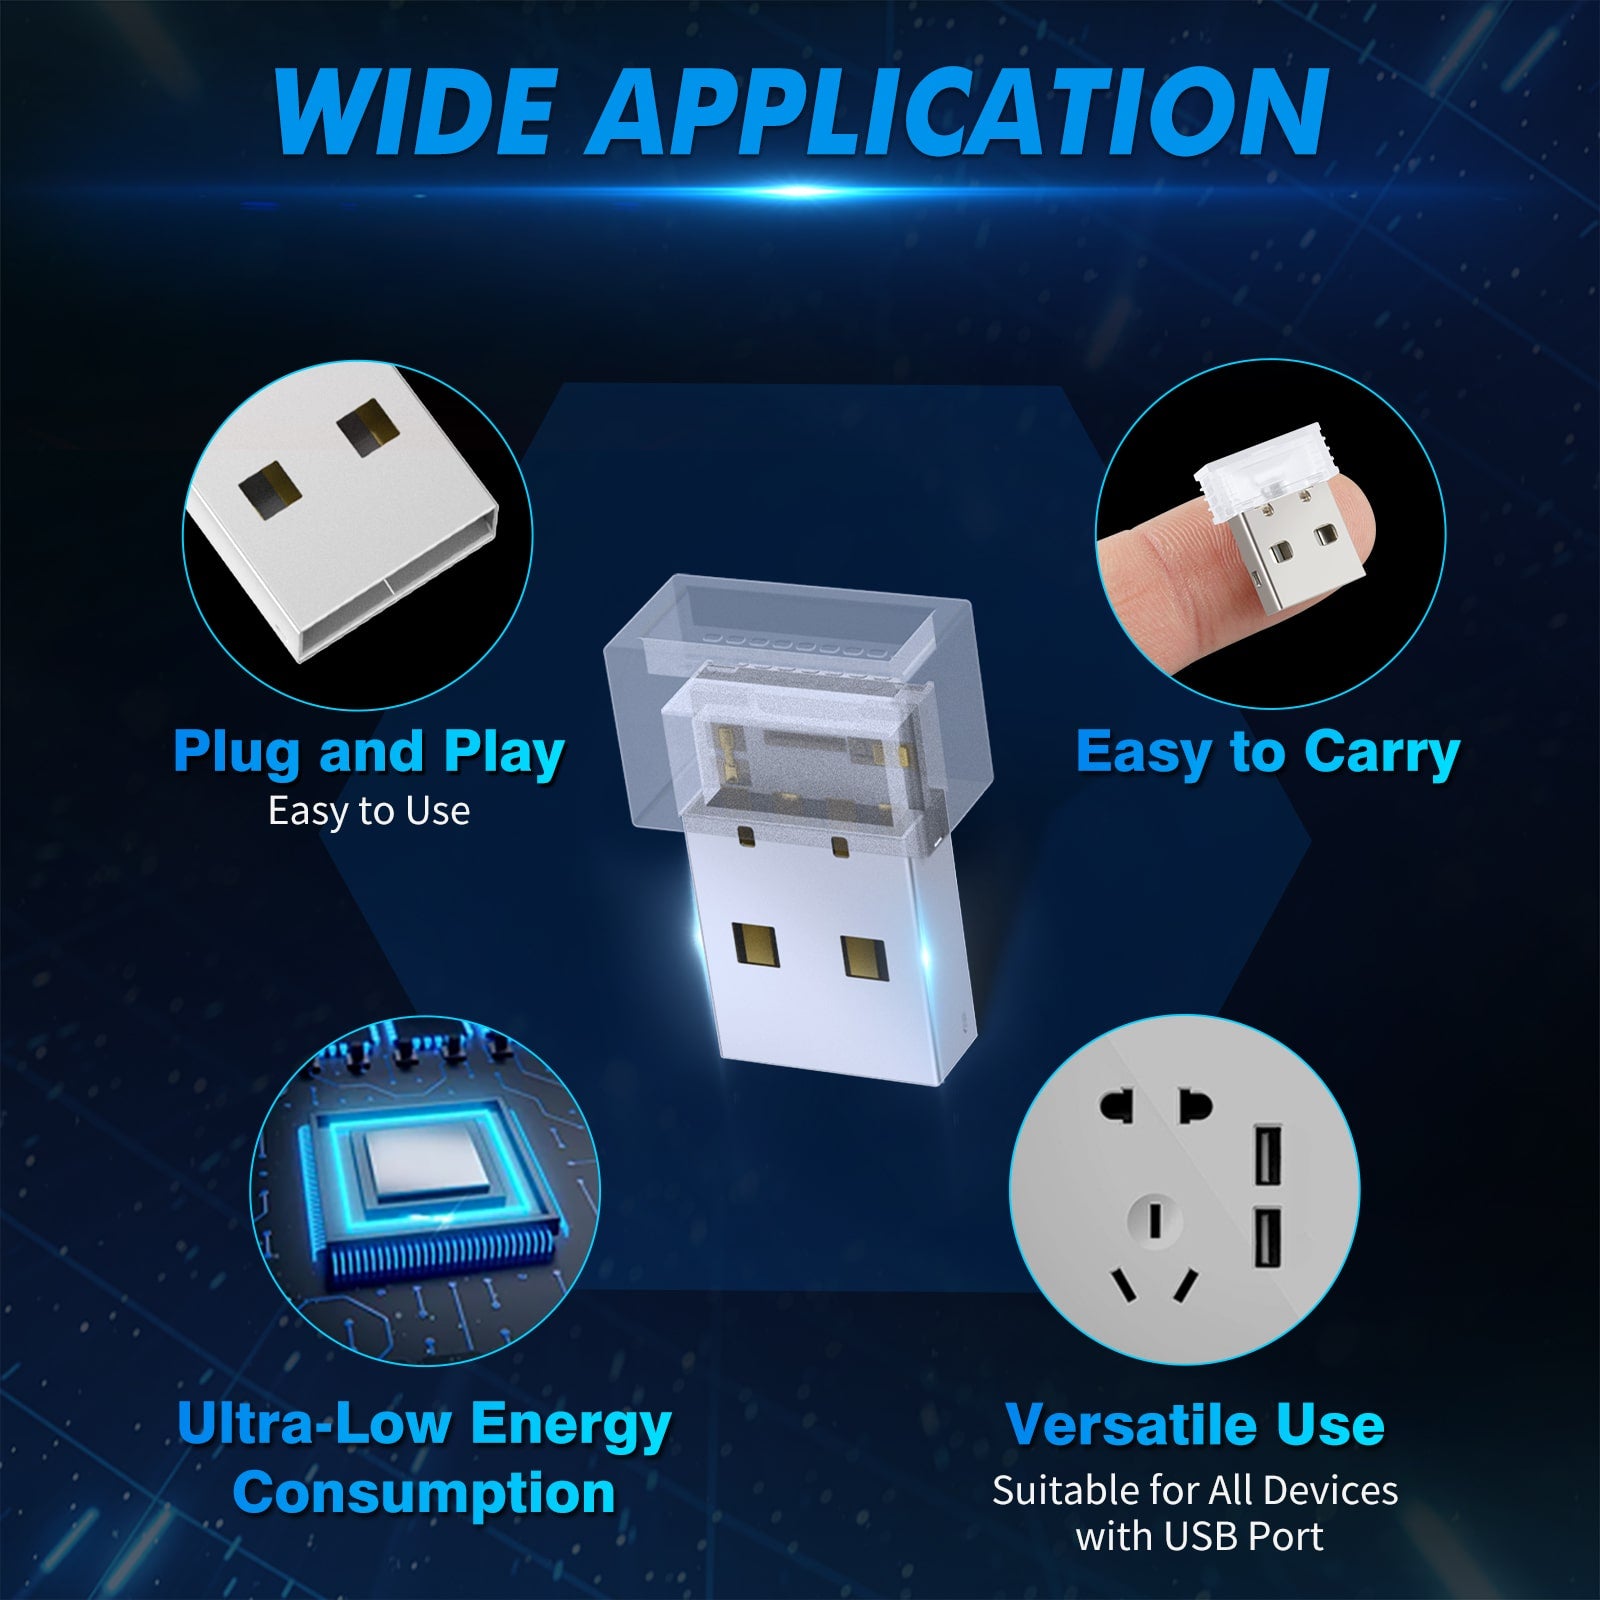 7 PCS Mini USB Car Light Universal Portable USB Atmosphere Light DC 5V